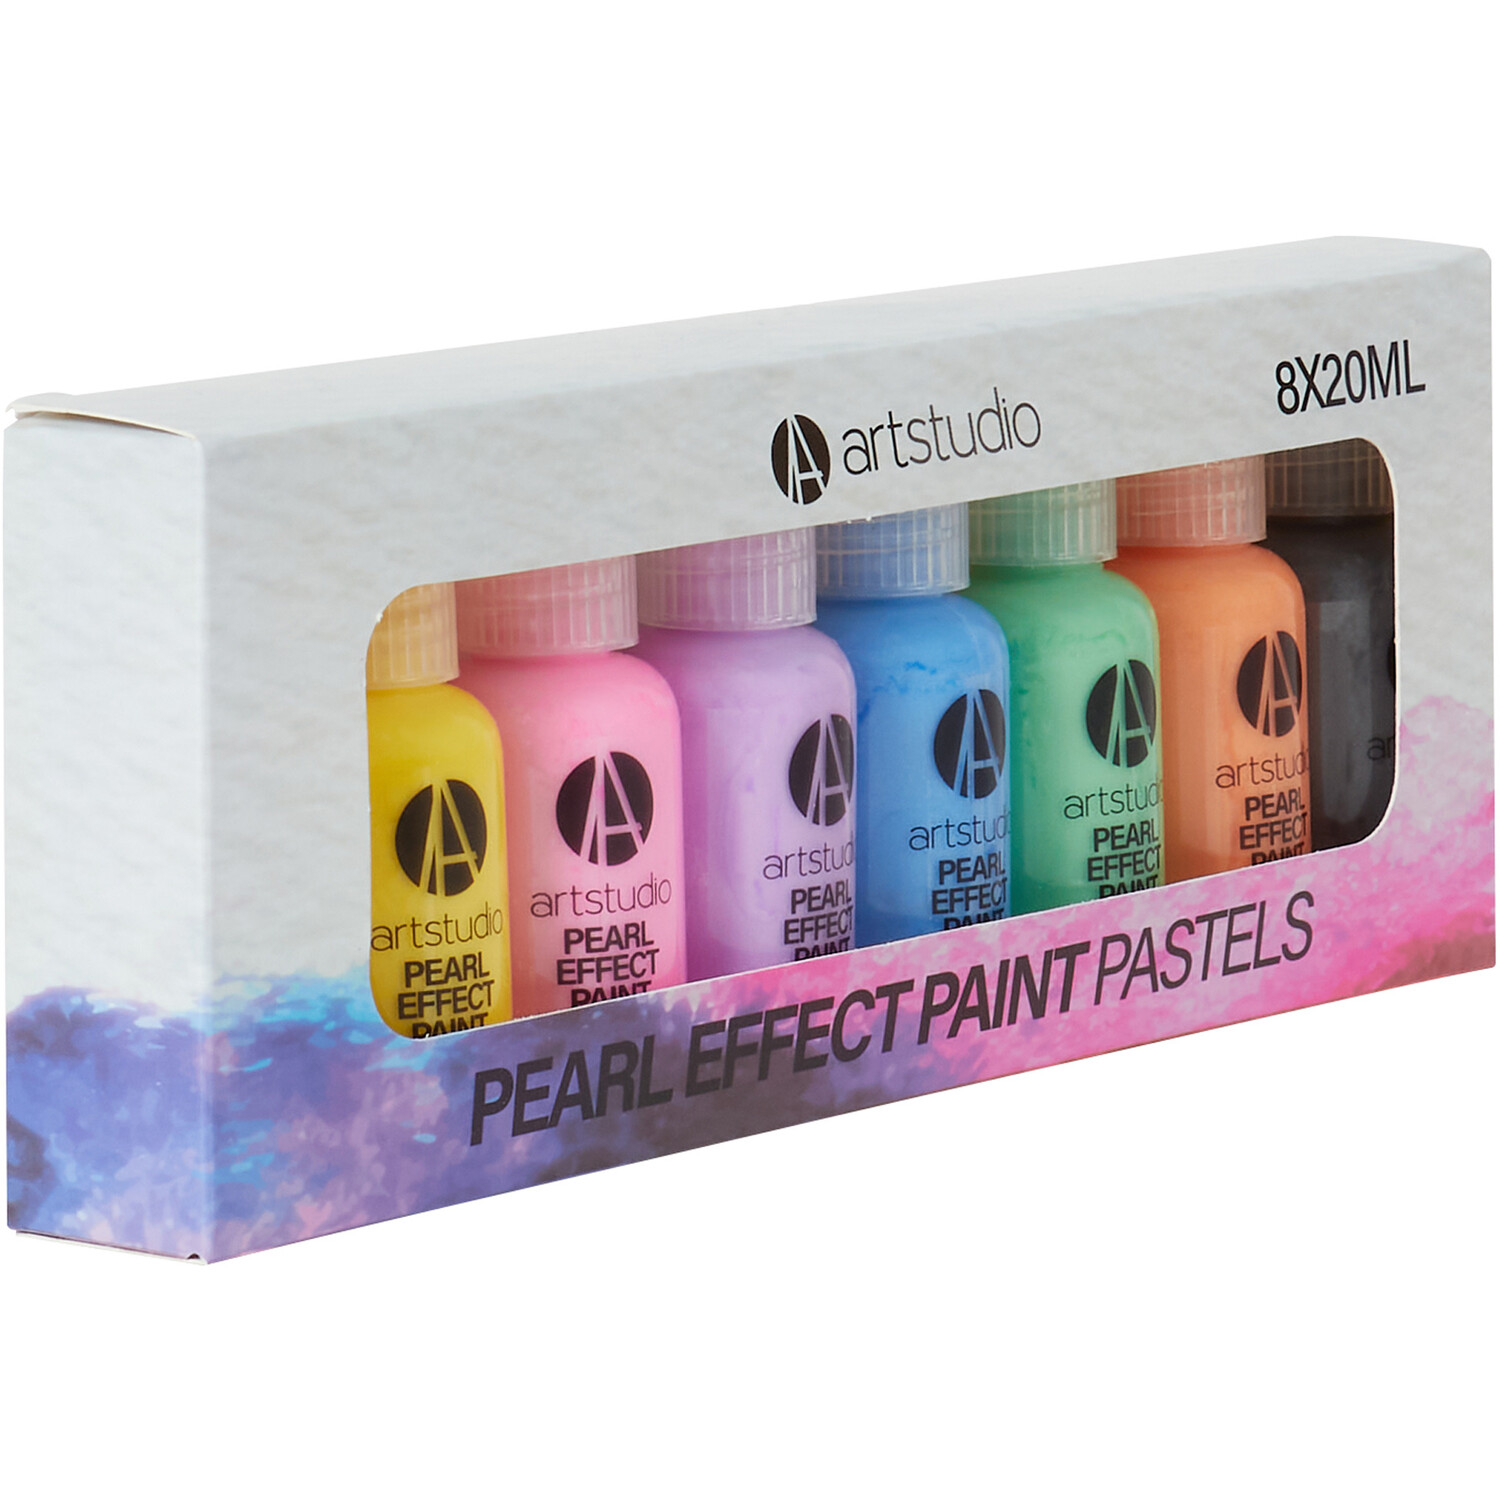 Art Studio Pearl Effect Paint - Pastels Image 3